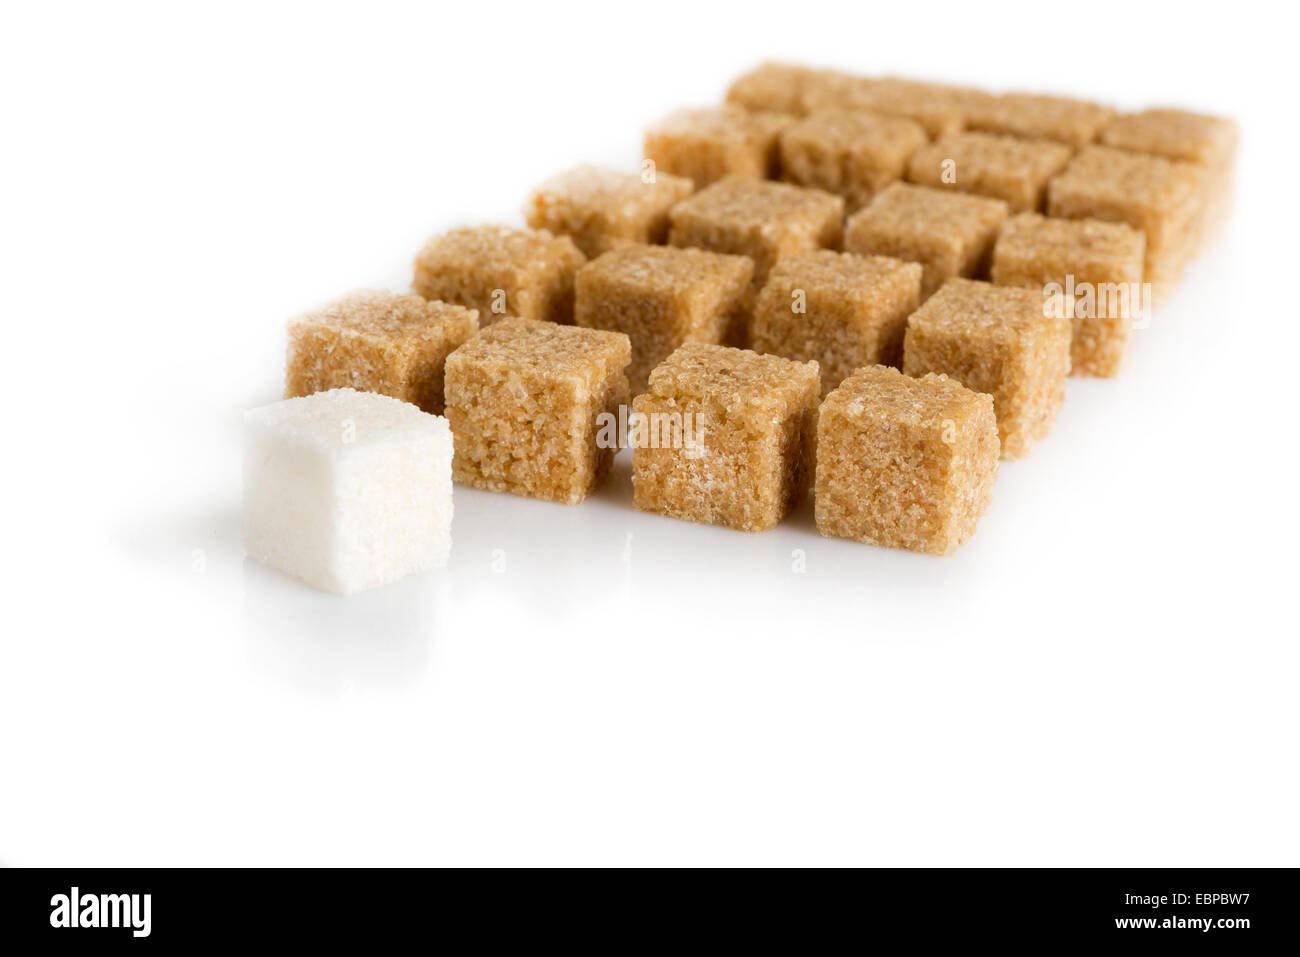 Cubetti di canna da zucchero marrone e bianco raffinato isolati su sfondo bianco Foto Stock